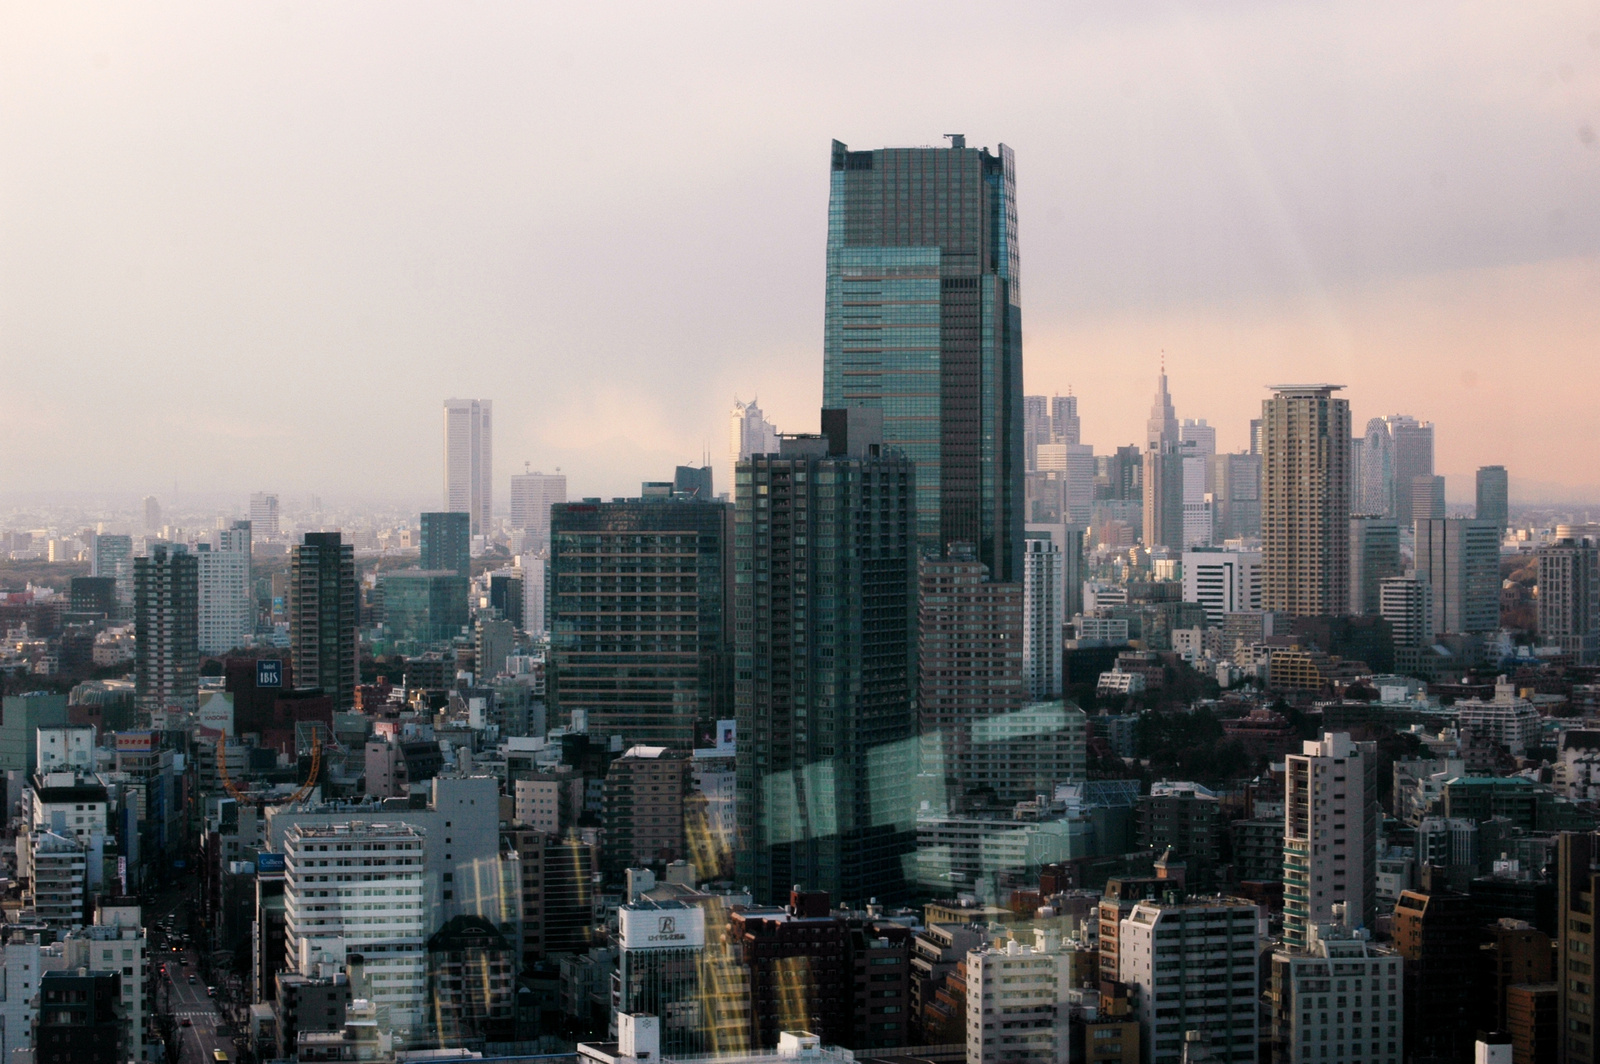 Végtelen város: Roppongi, háttérben Shinjuku